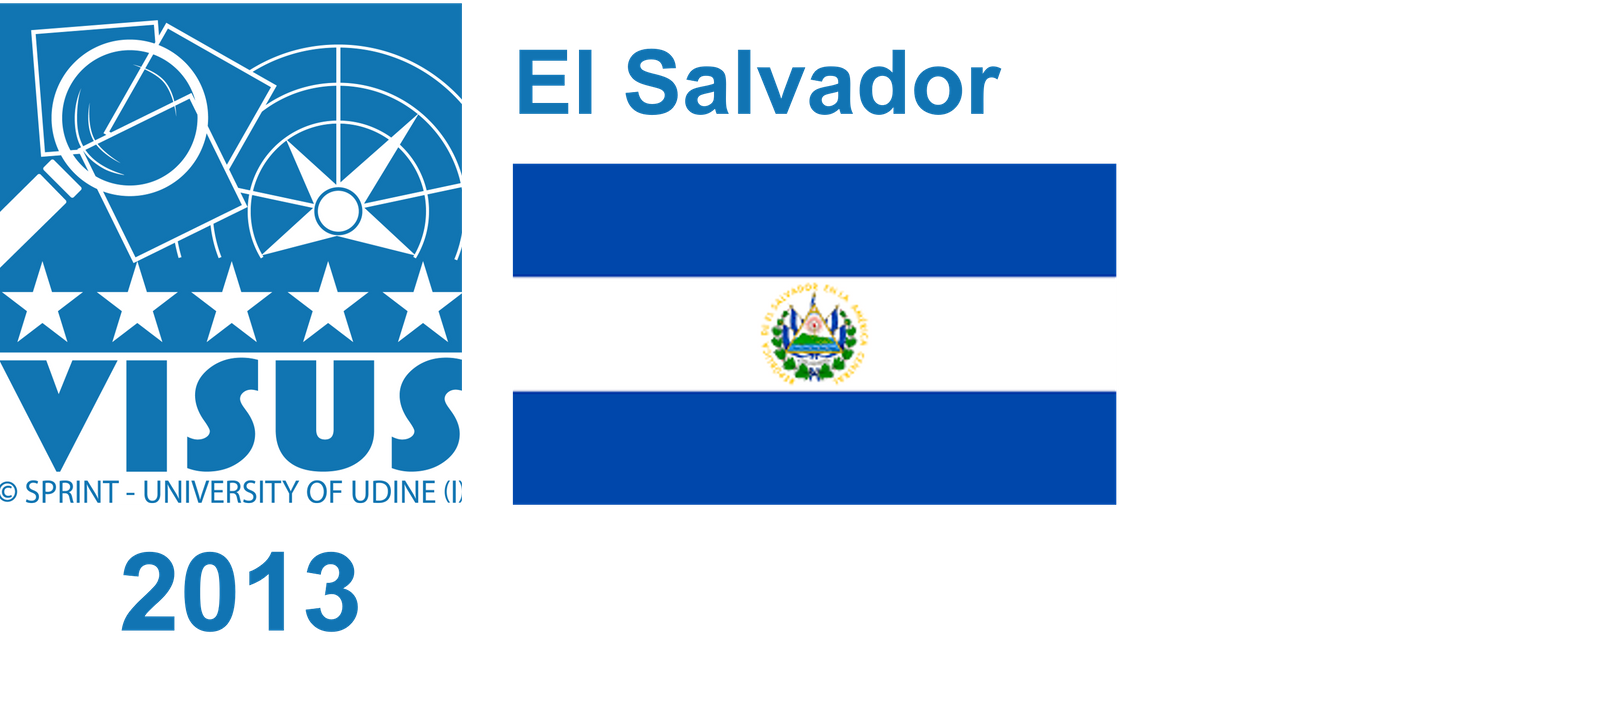 VISUS El Salvador 2013